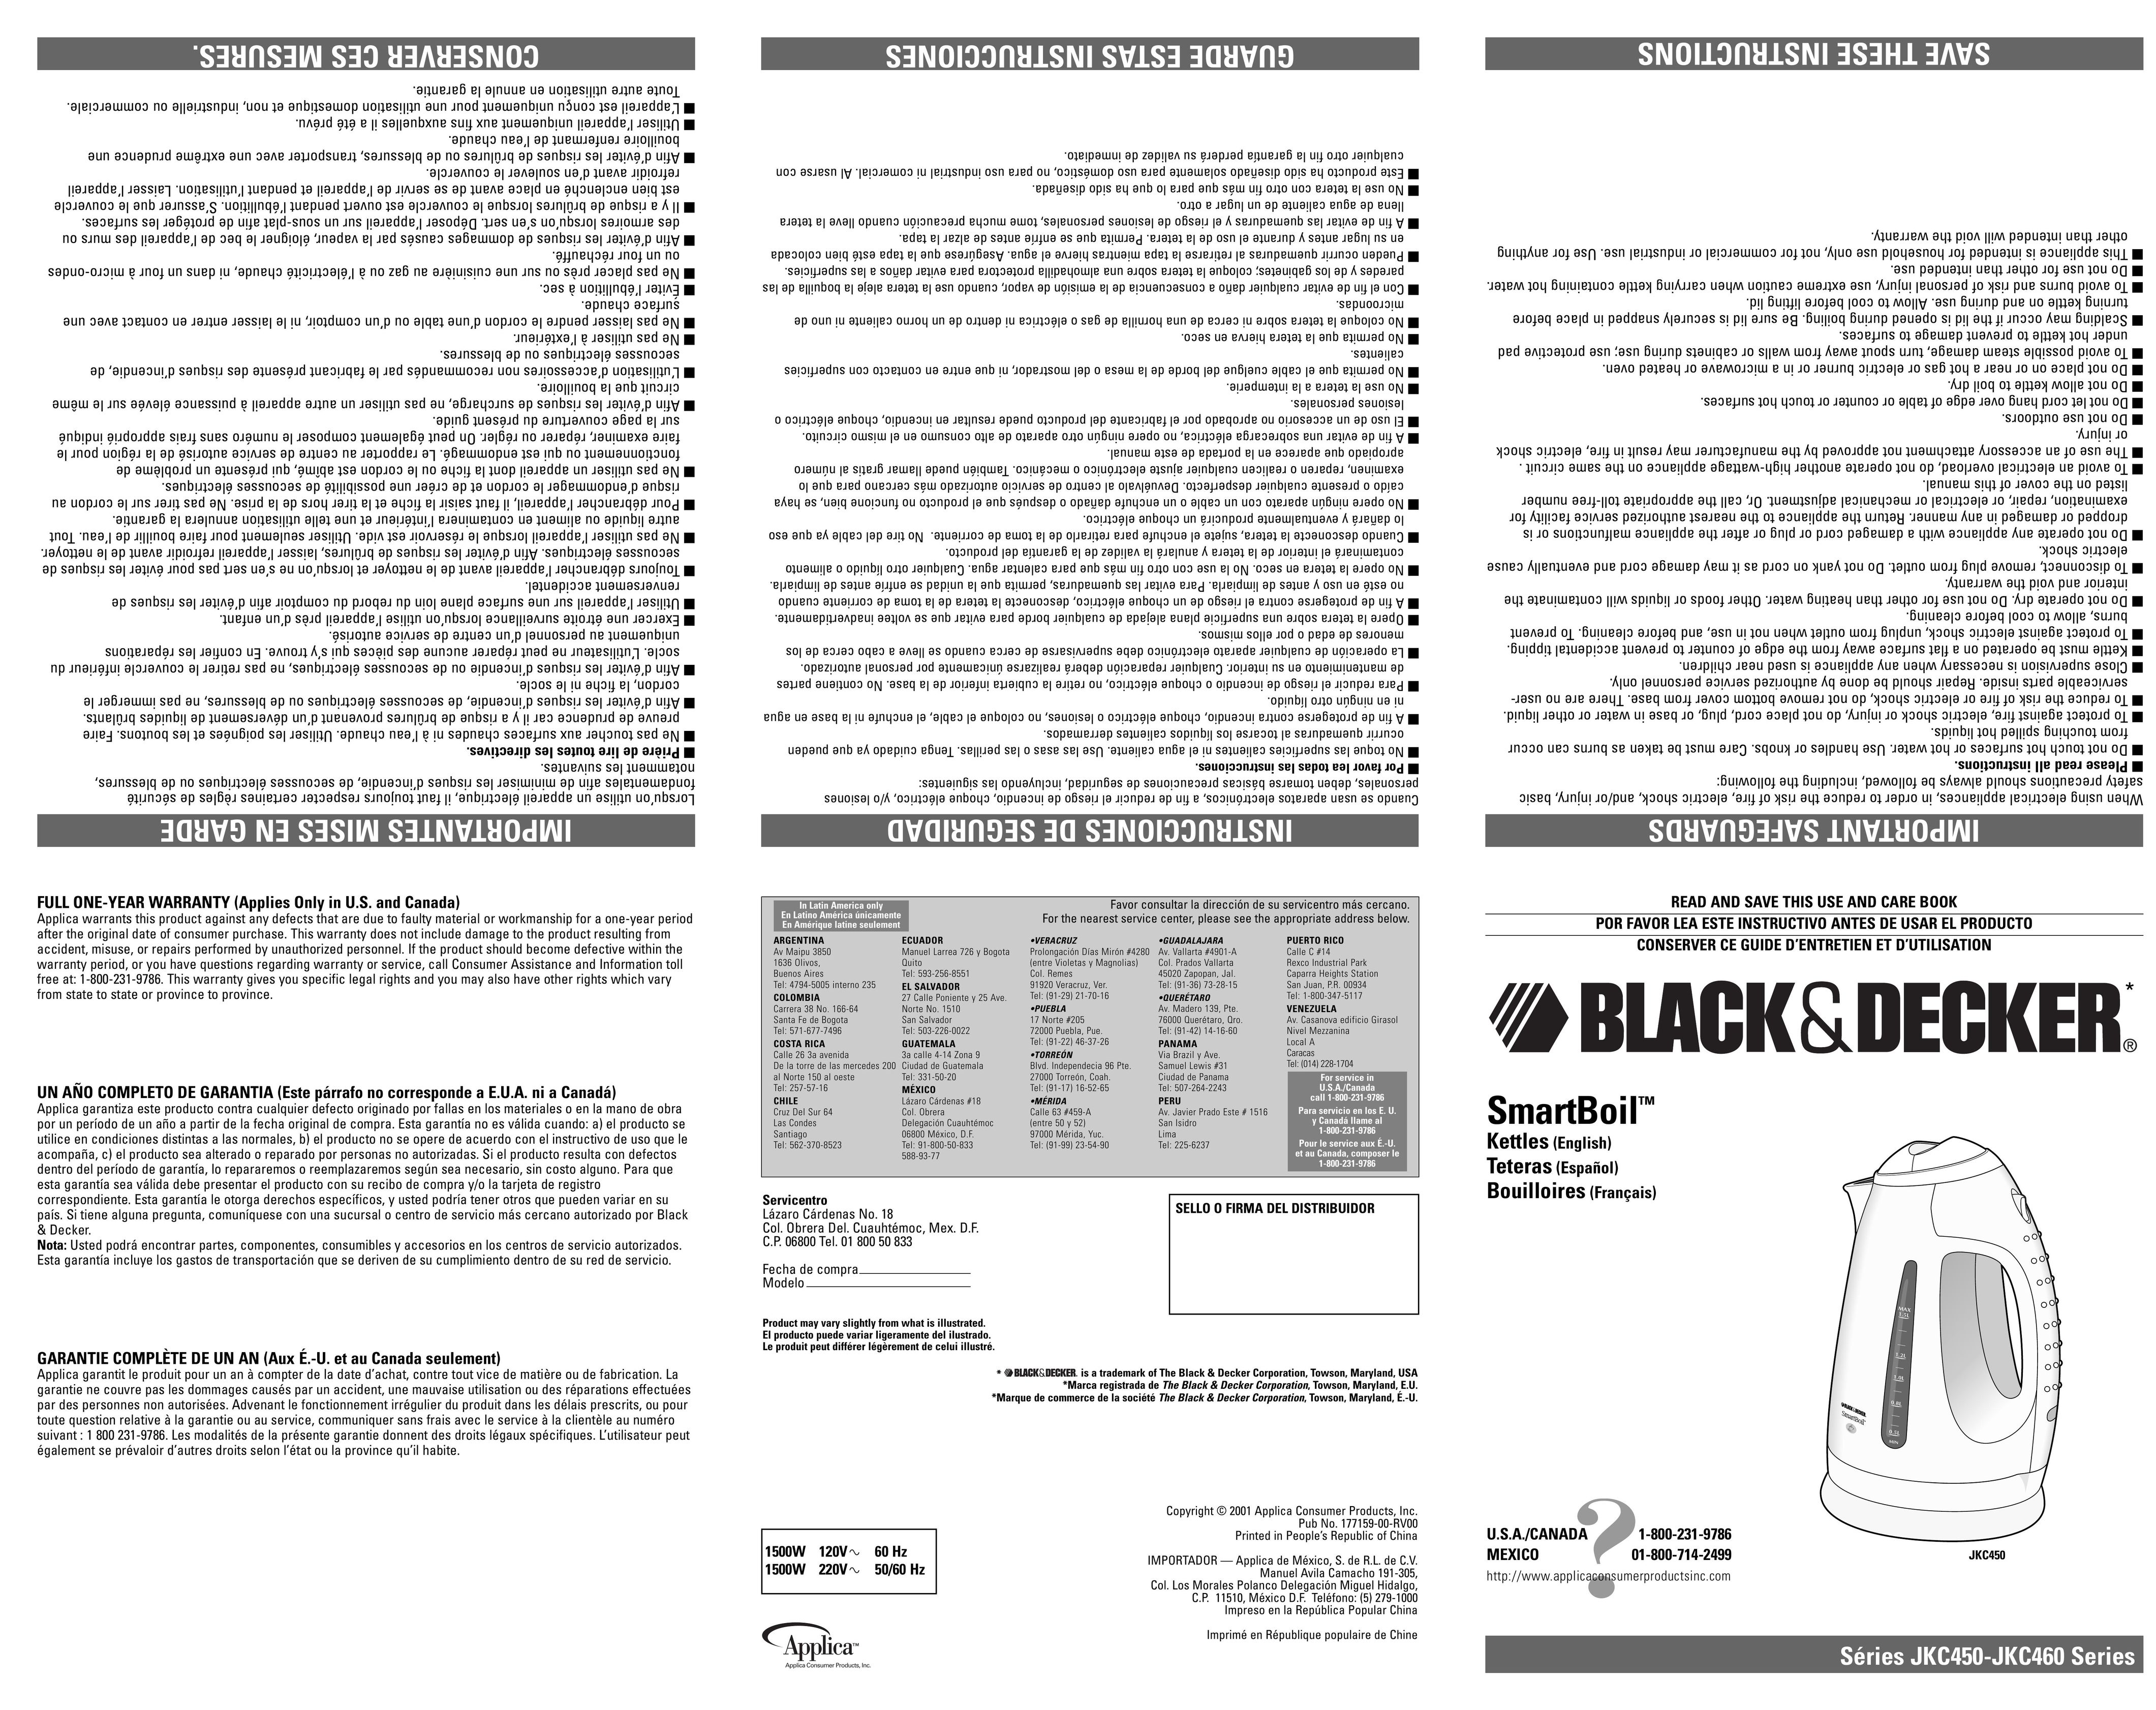 Black & Decker JKC450 Hot Beverage Maker User Manual